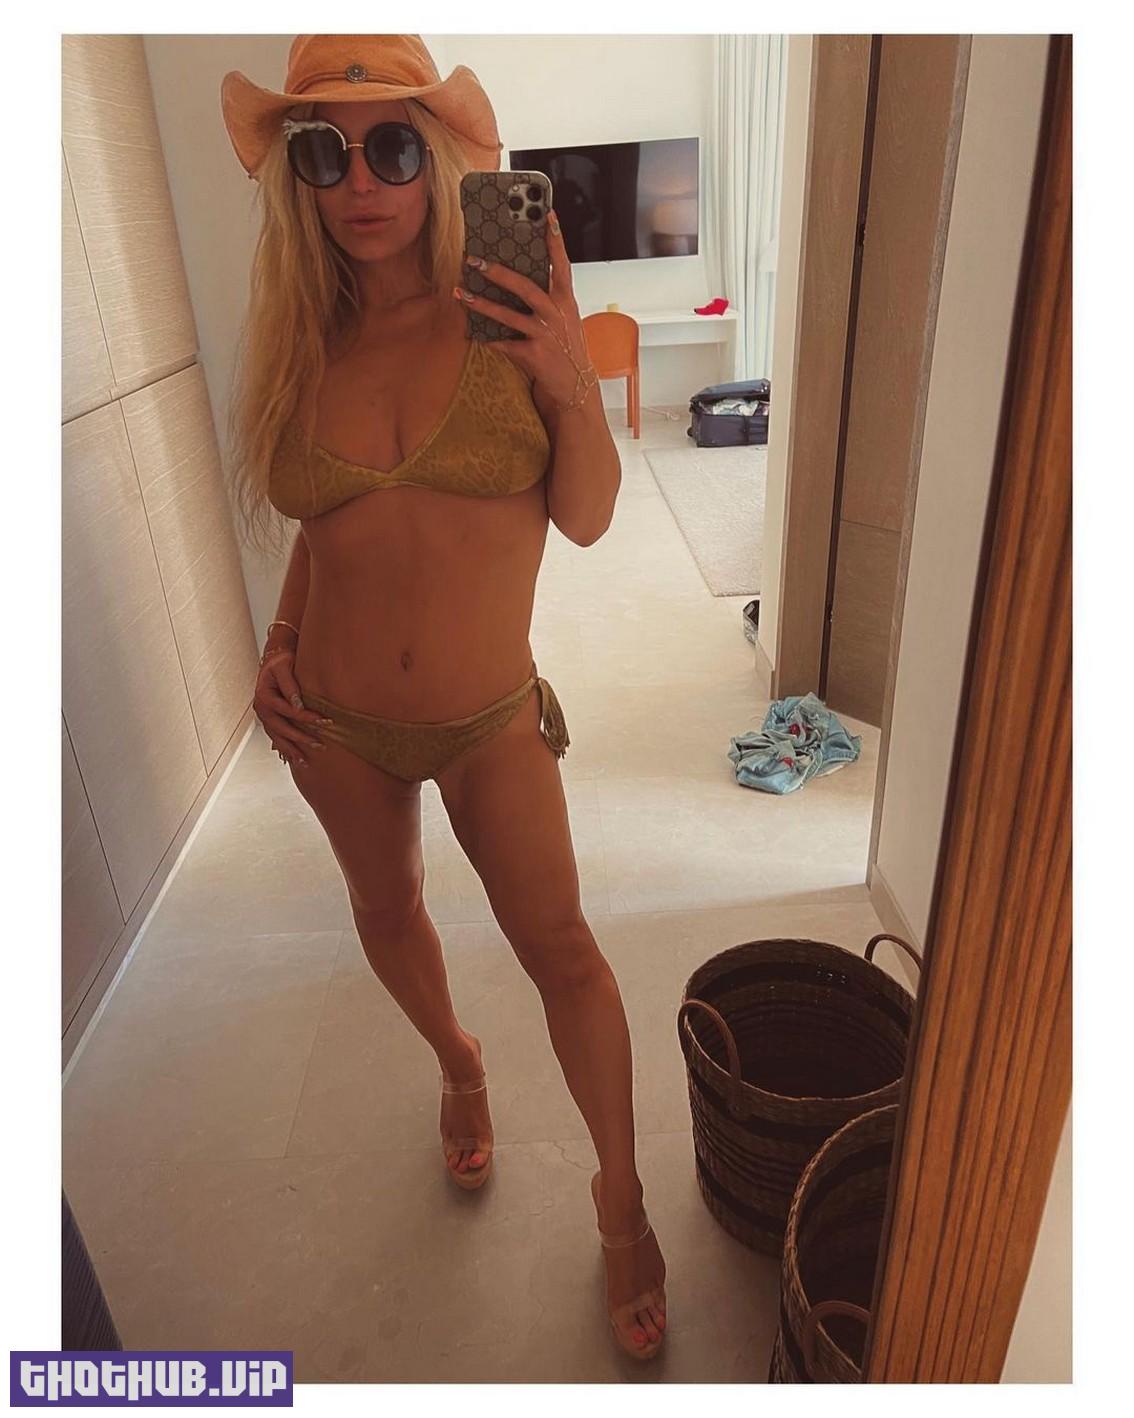 Jessica Simpson Bikini Selfie